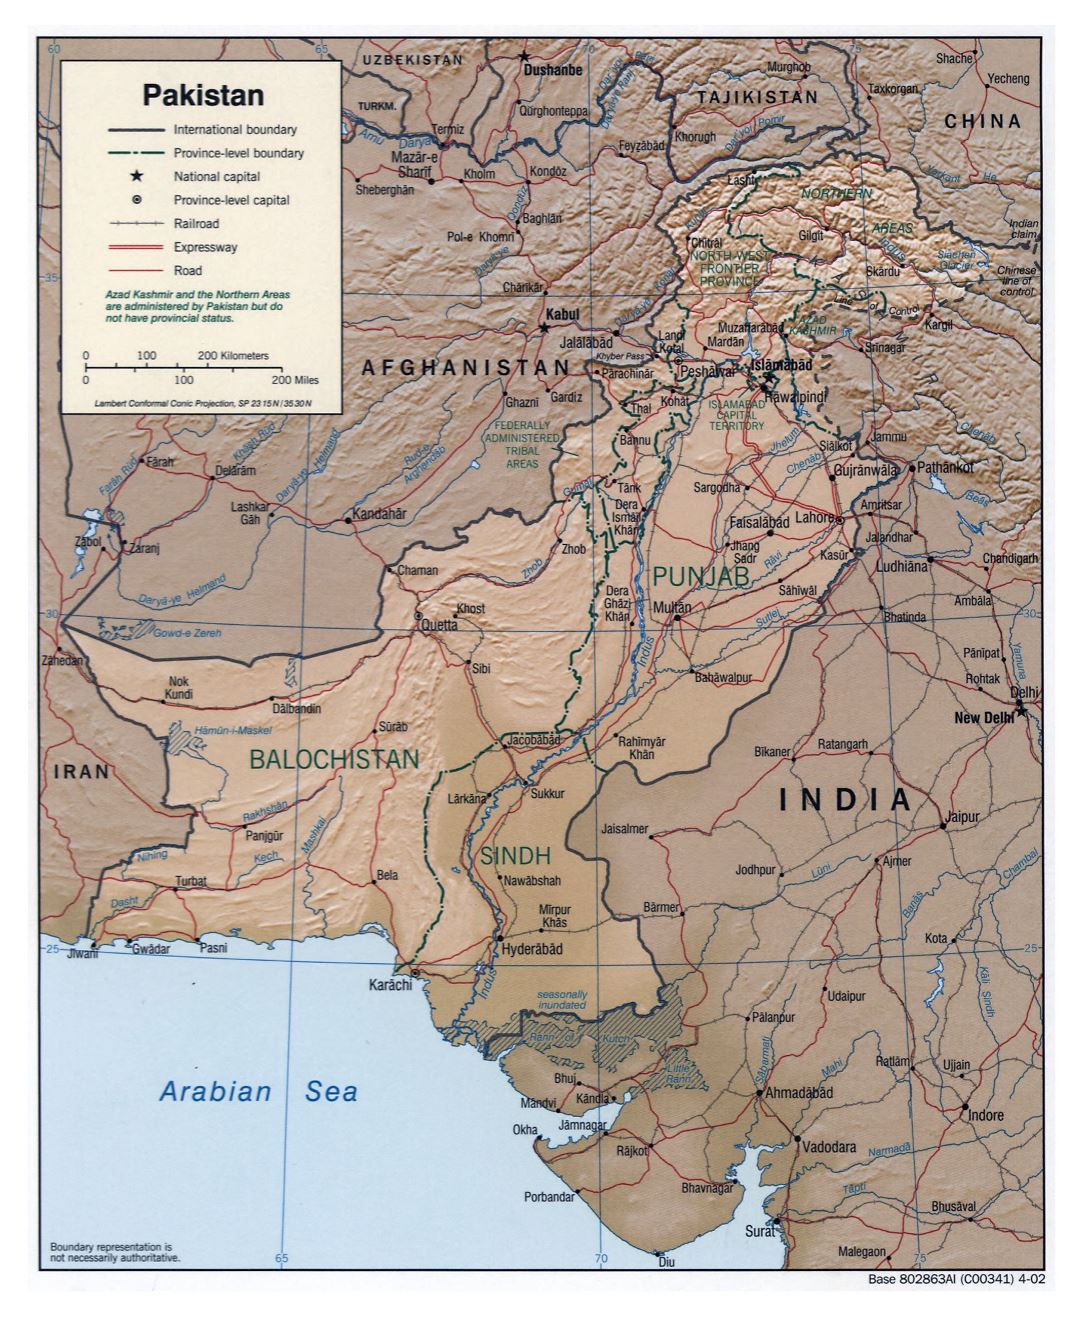 Grande detallado mapa político y administrativo de Pakistán con relieve, carreteras, ferrocarriles y principales ciudades - 2002